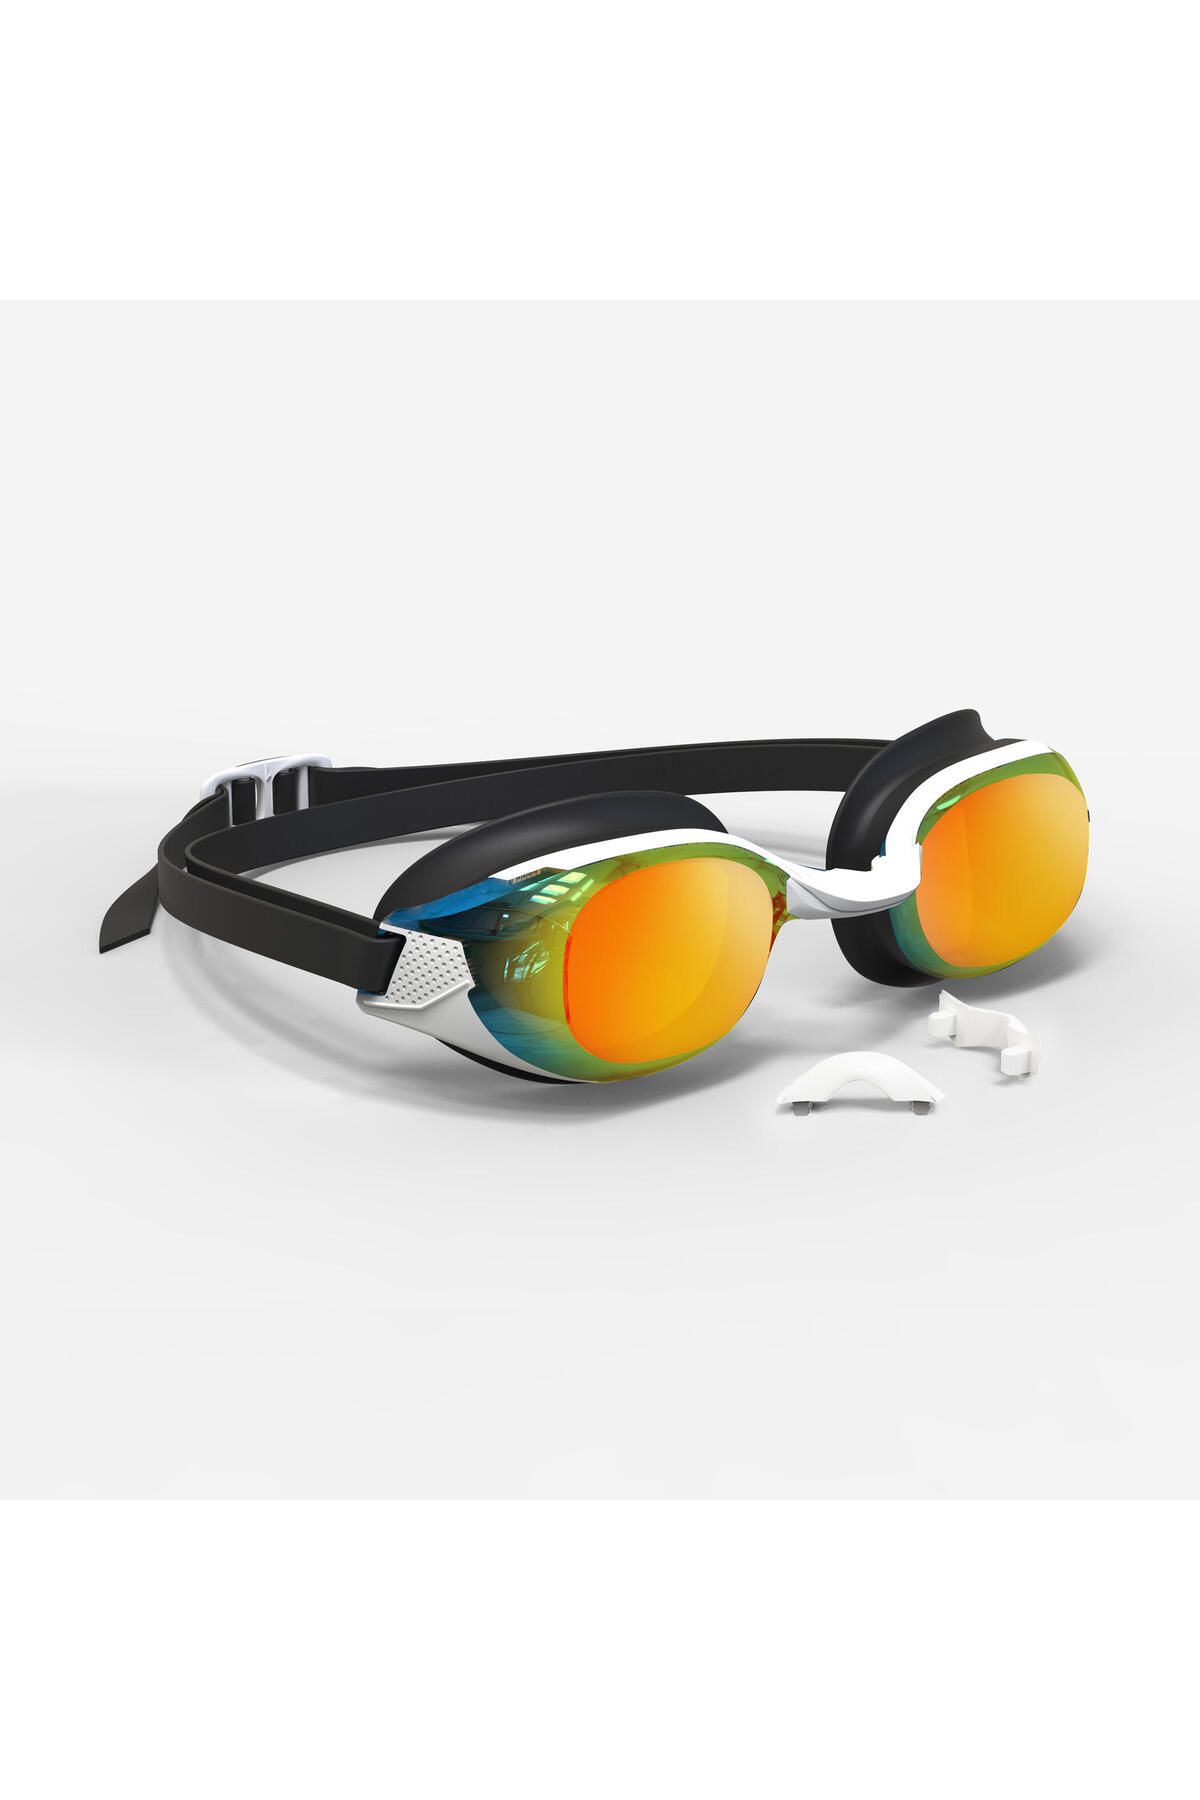 Decathlon Yüzücü Gözlüğü - Standart Boy - Siyah/Turuncu - Aynalı Camlar - BFIT